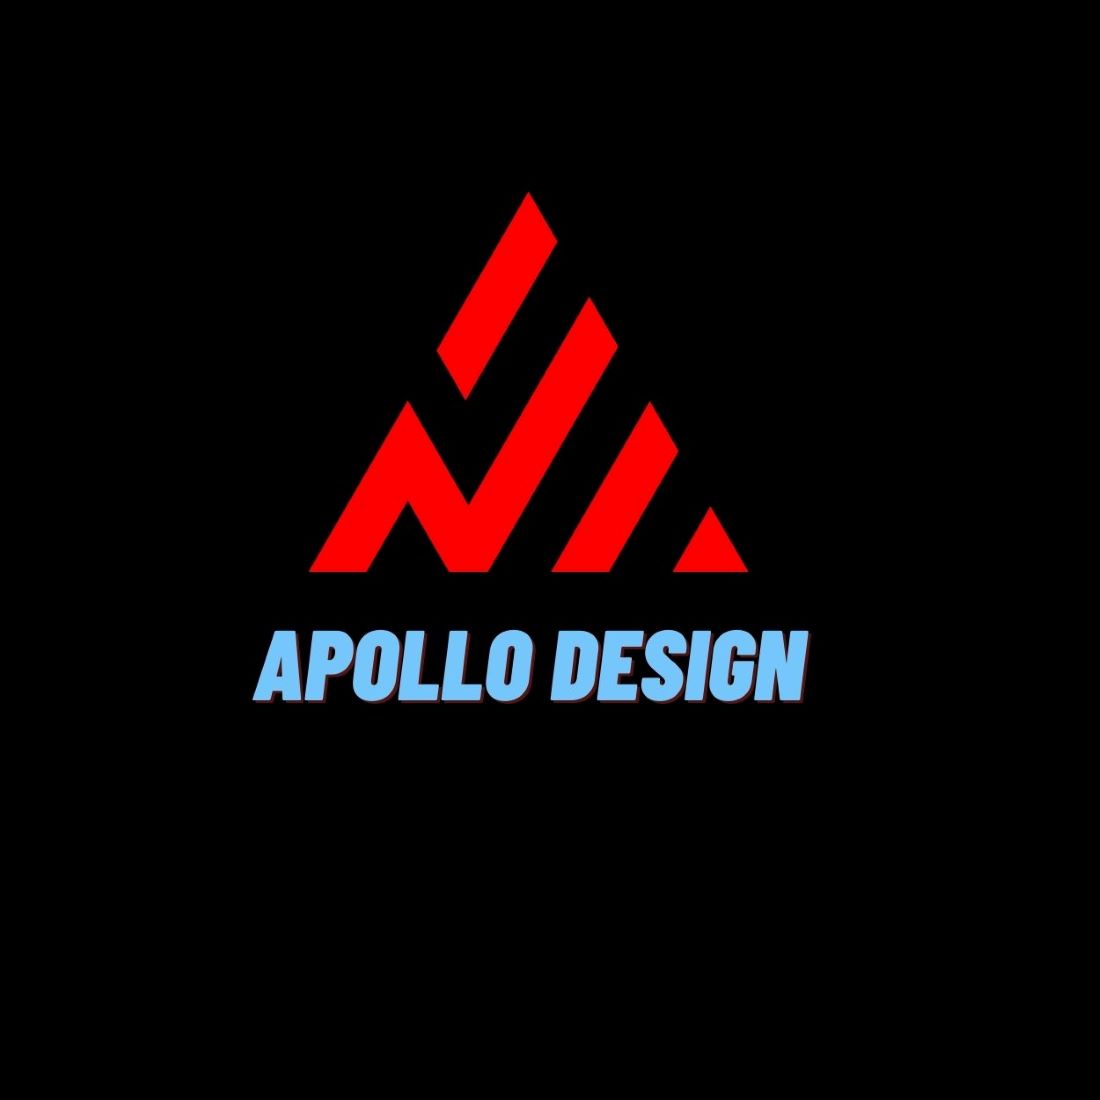 A Logos Templates cover image.